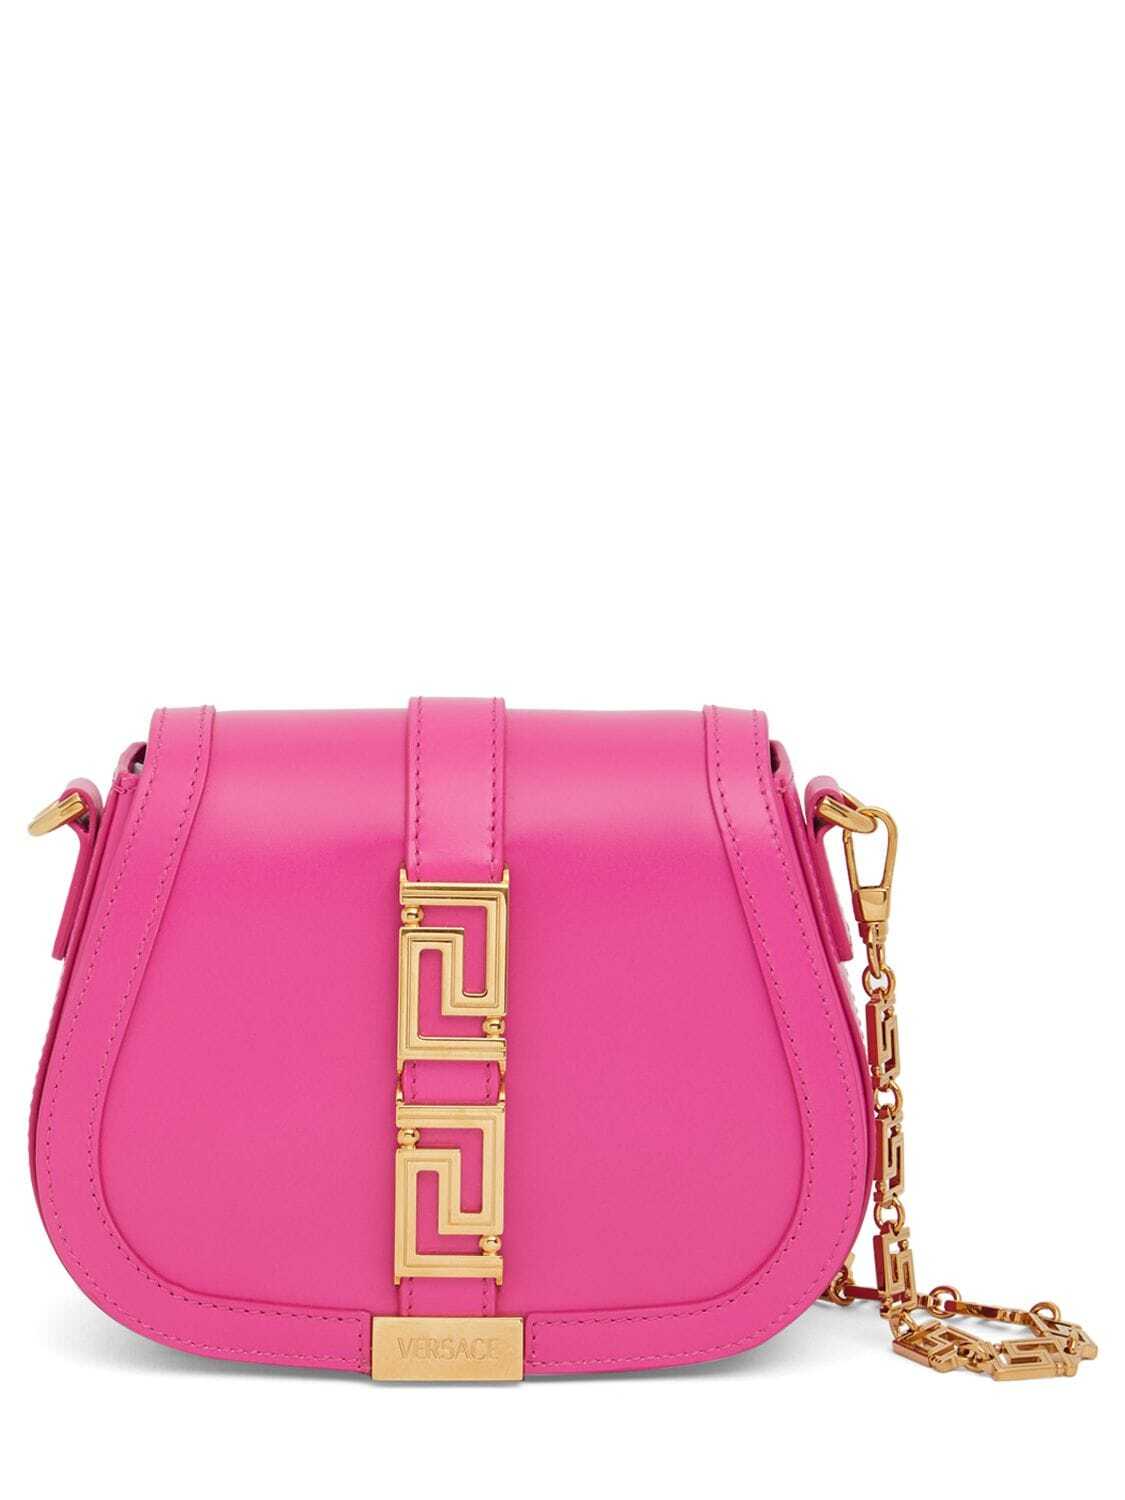 VERSACE Mini Greca Goddess Leather Shoulder Bag in pink